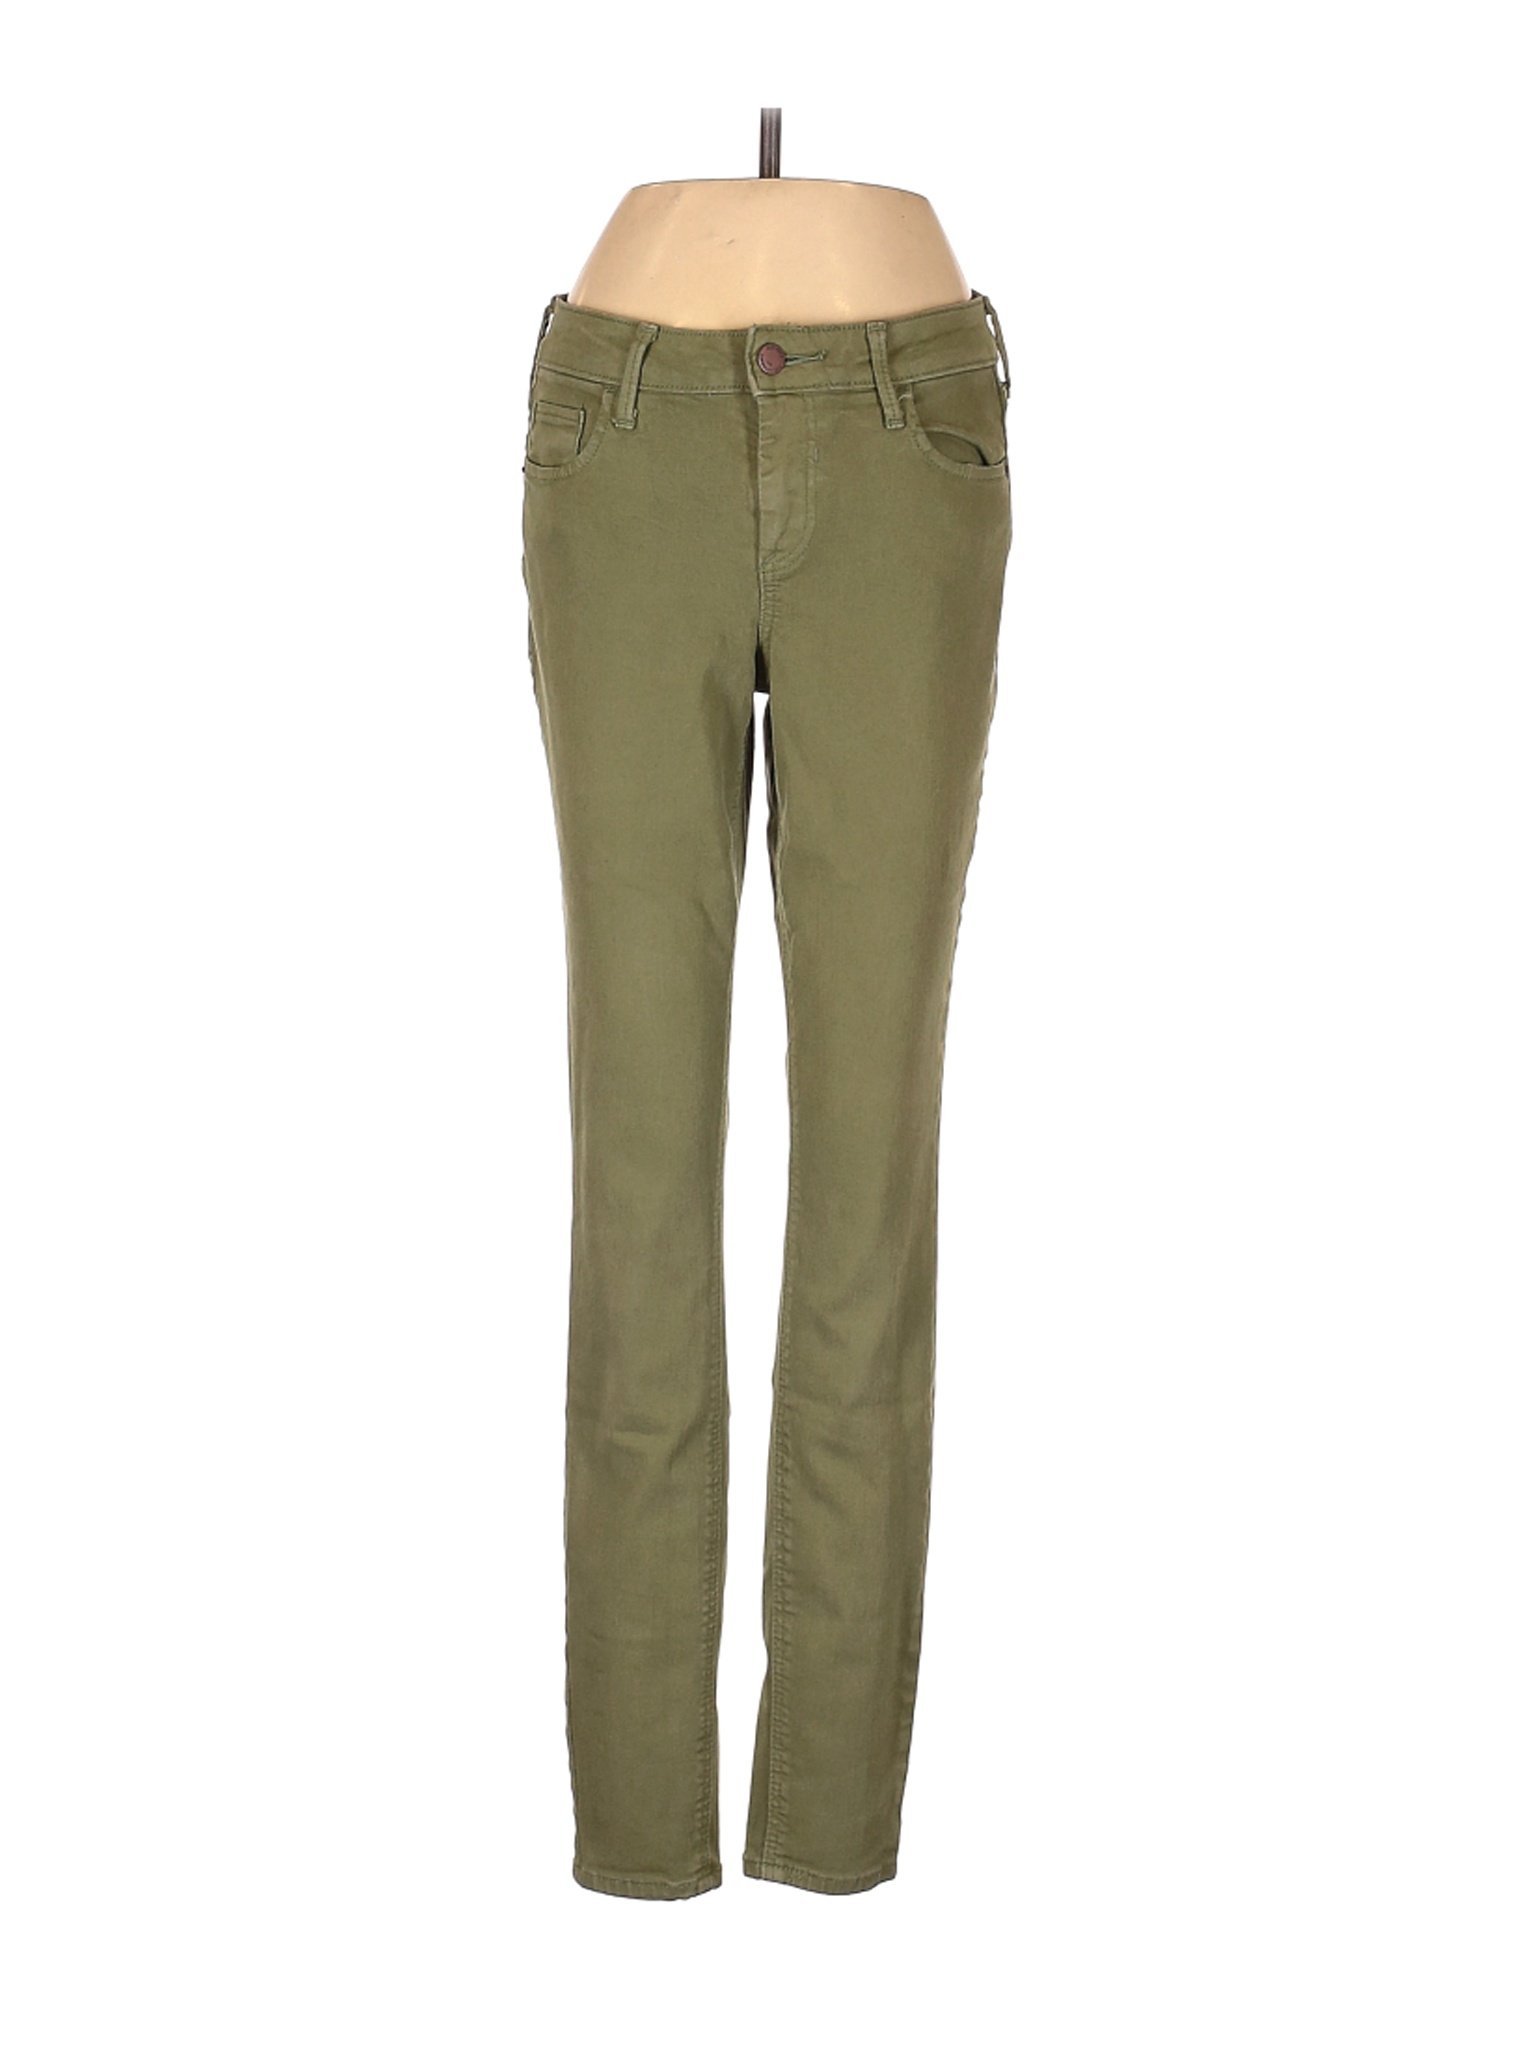 Old Navy Women Green Jeans 0 | eBay